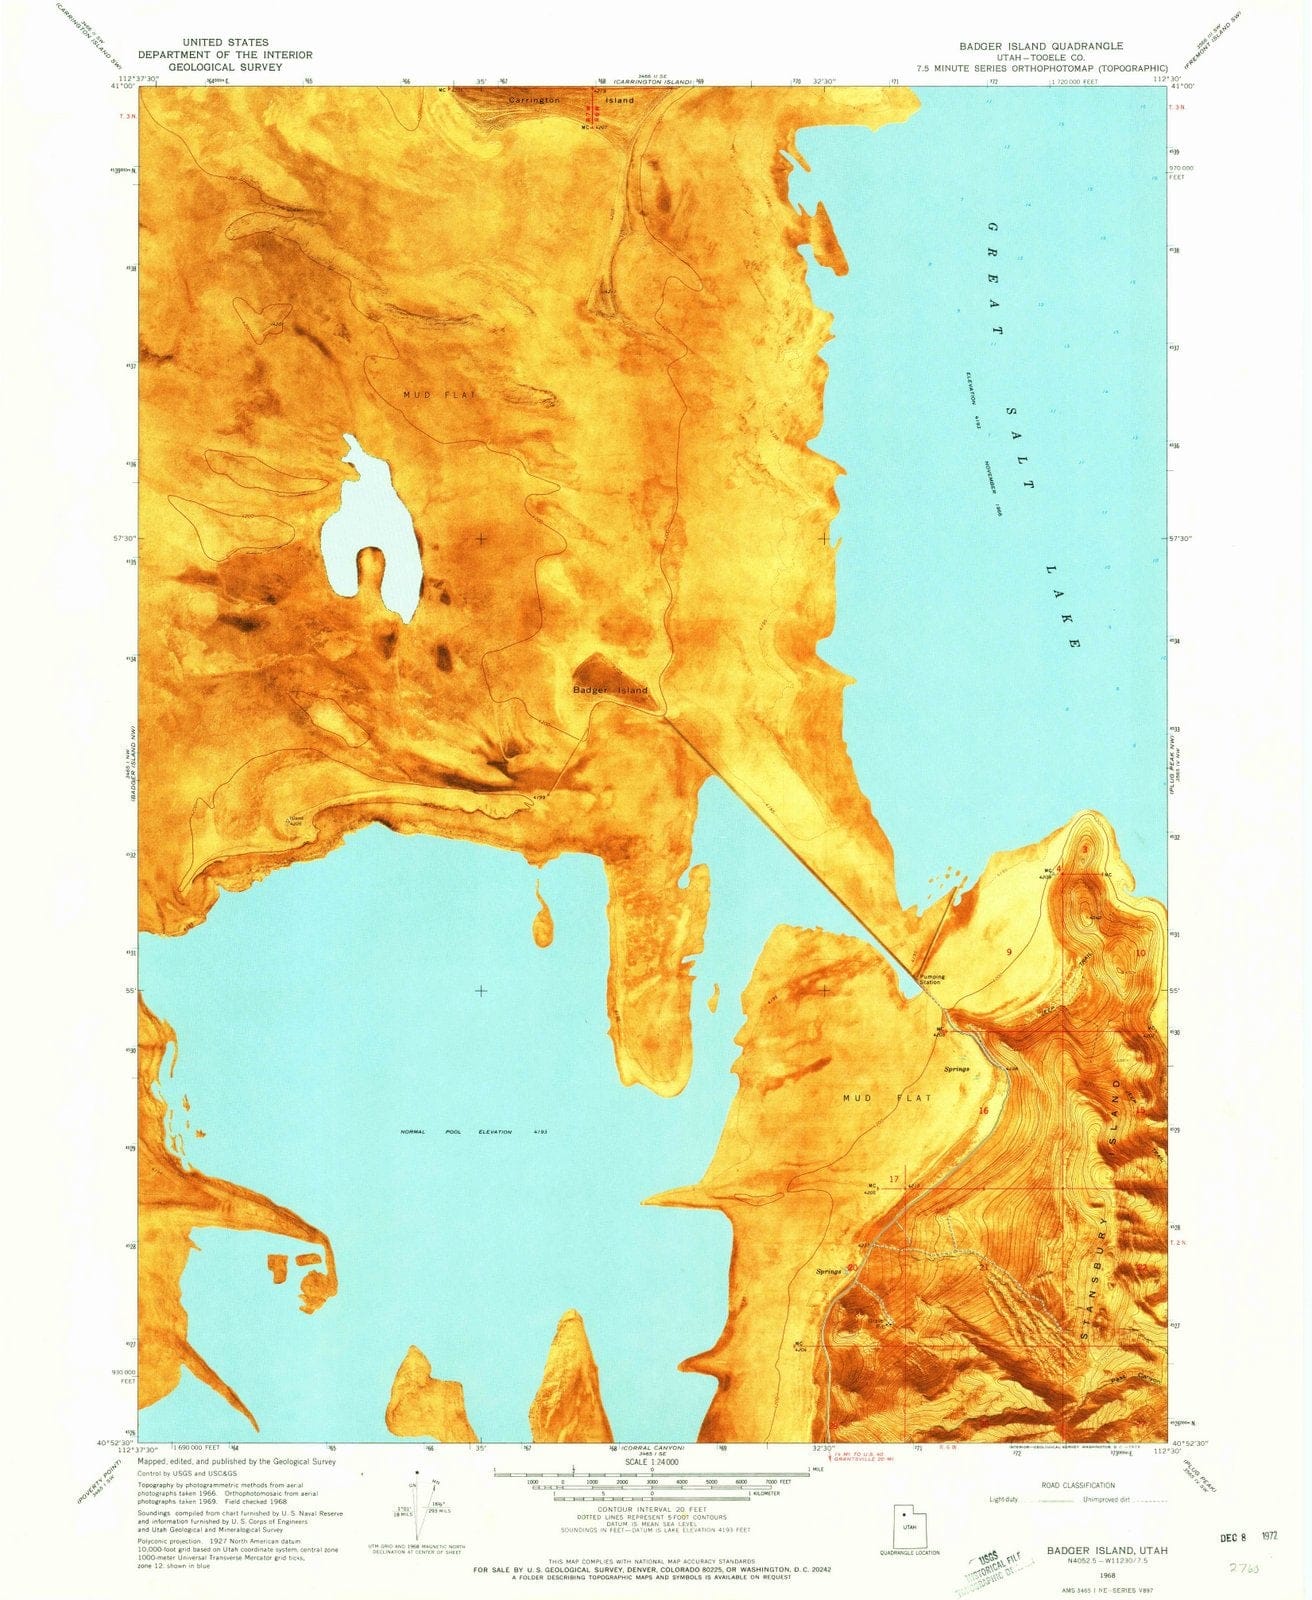 1968 Badger Island, UT - Utah - USGS Topographic Map v2